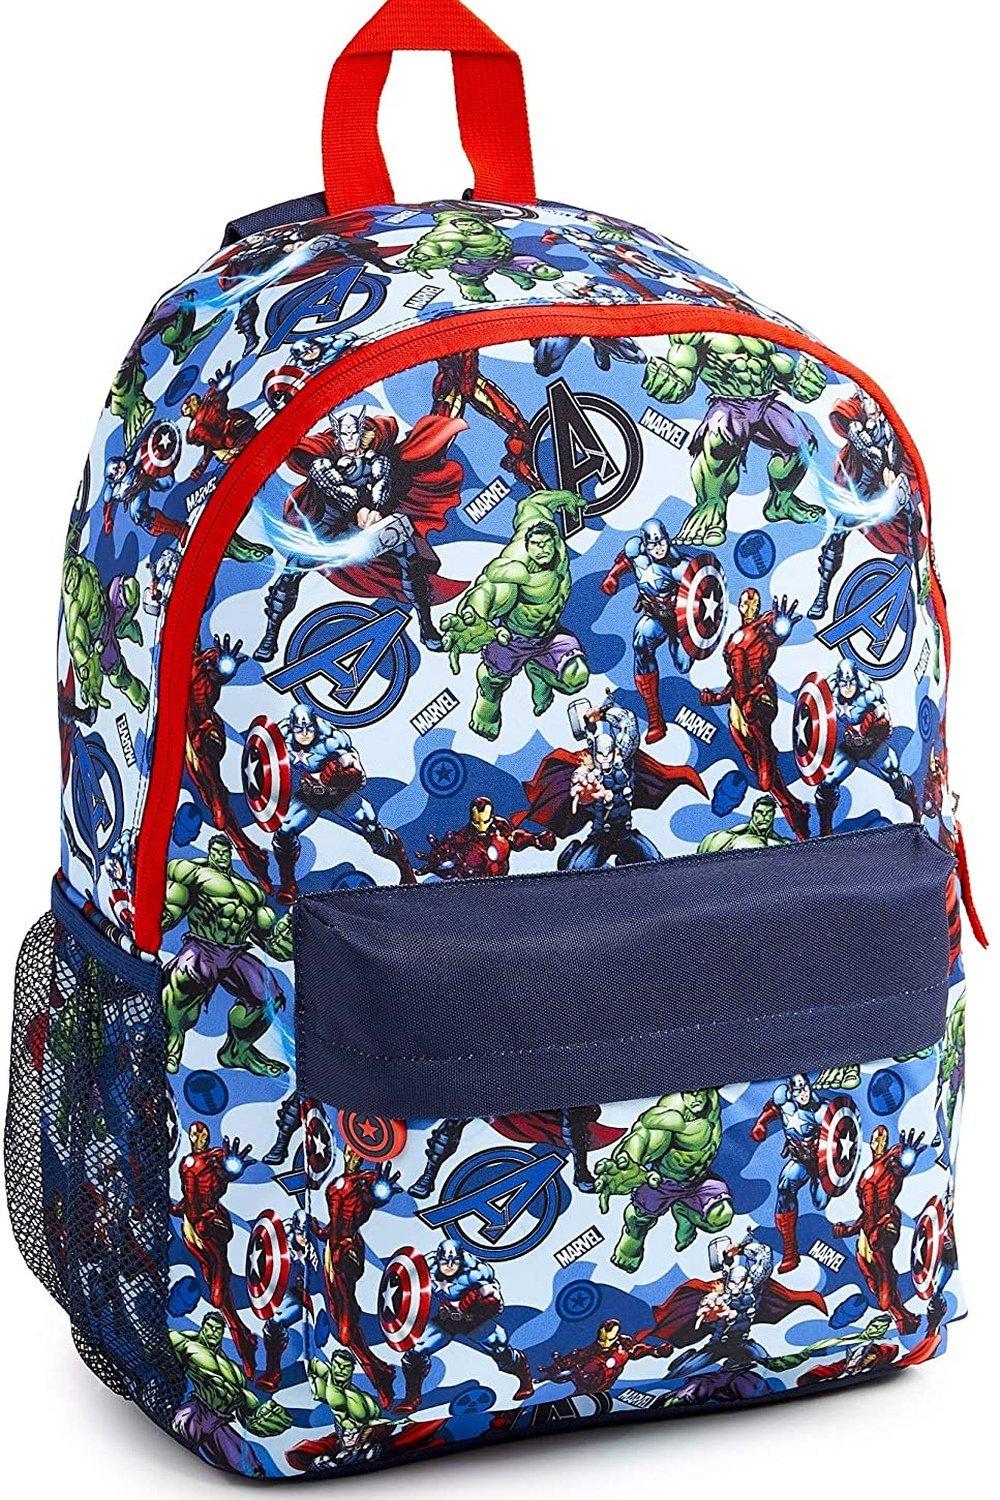 Большой рюкзак Avengers Superheros Marvel, синий